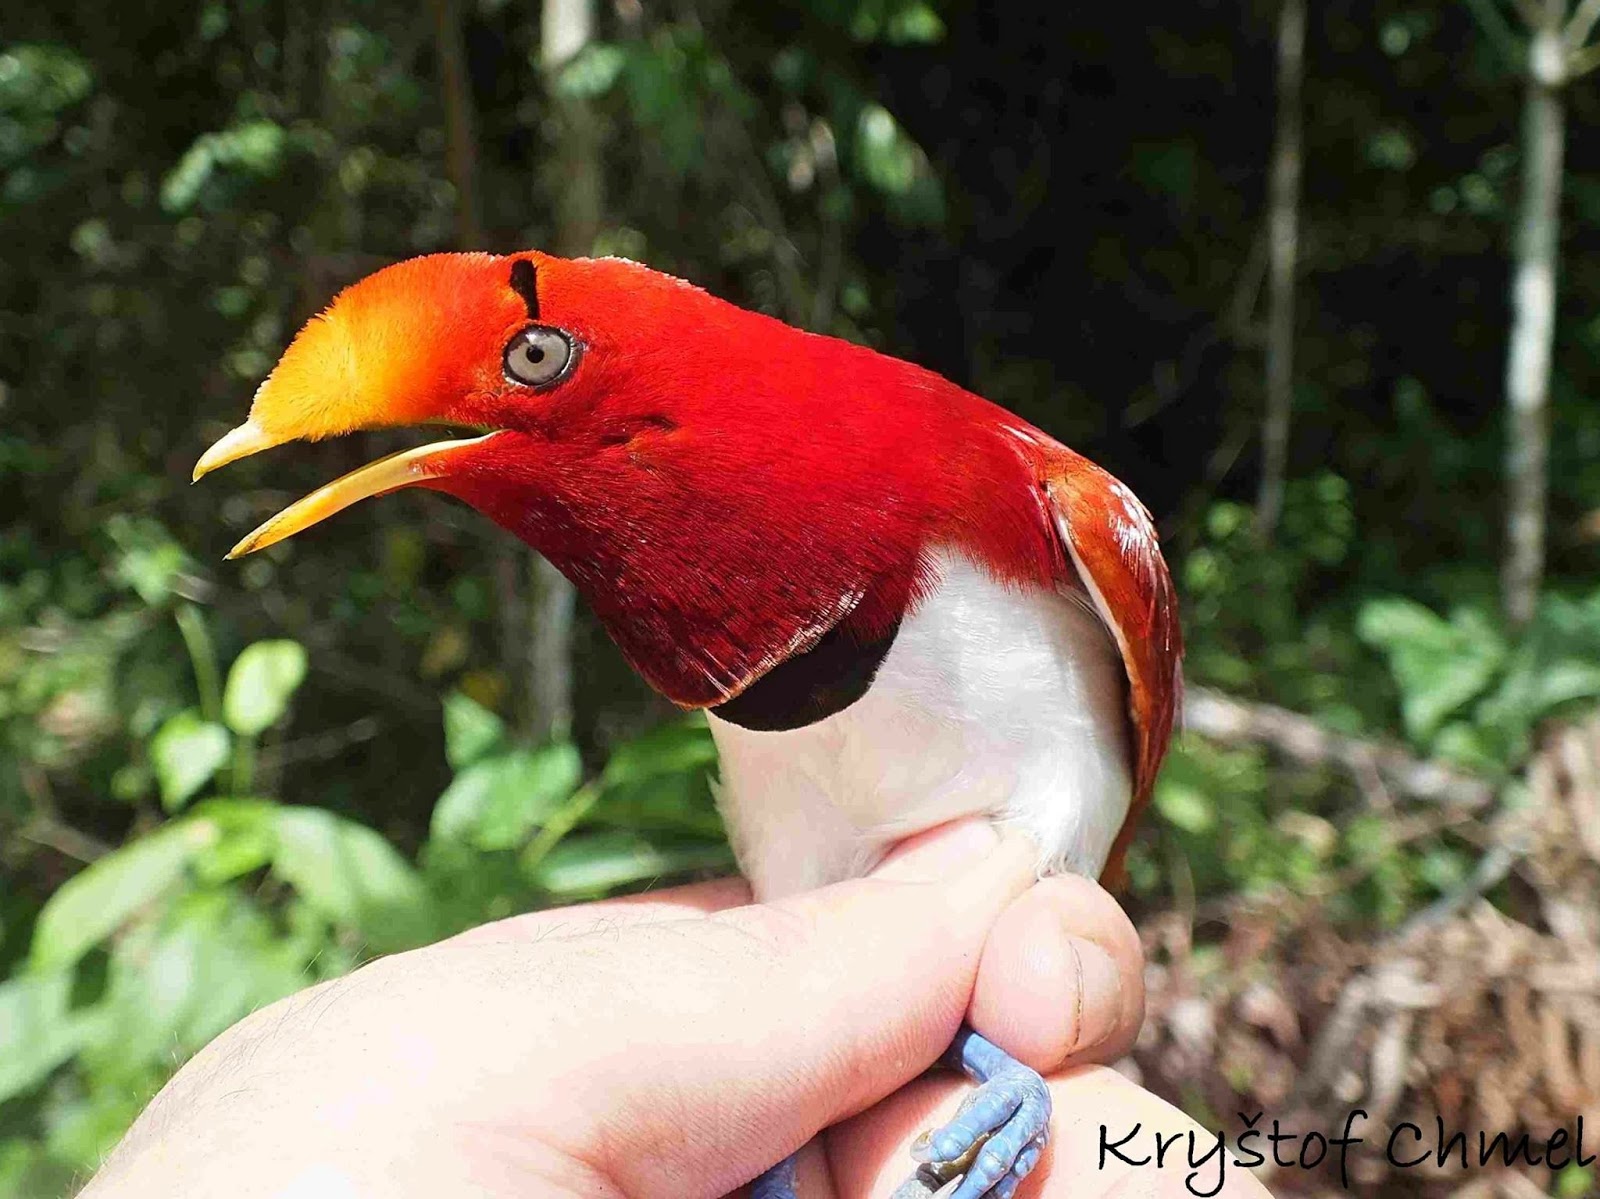 Ornitologia | As Aves Mais Belas do Mundo